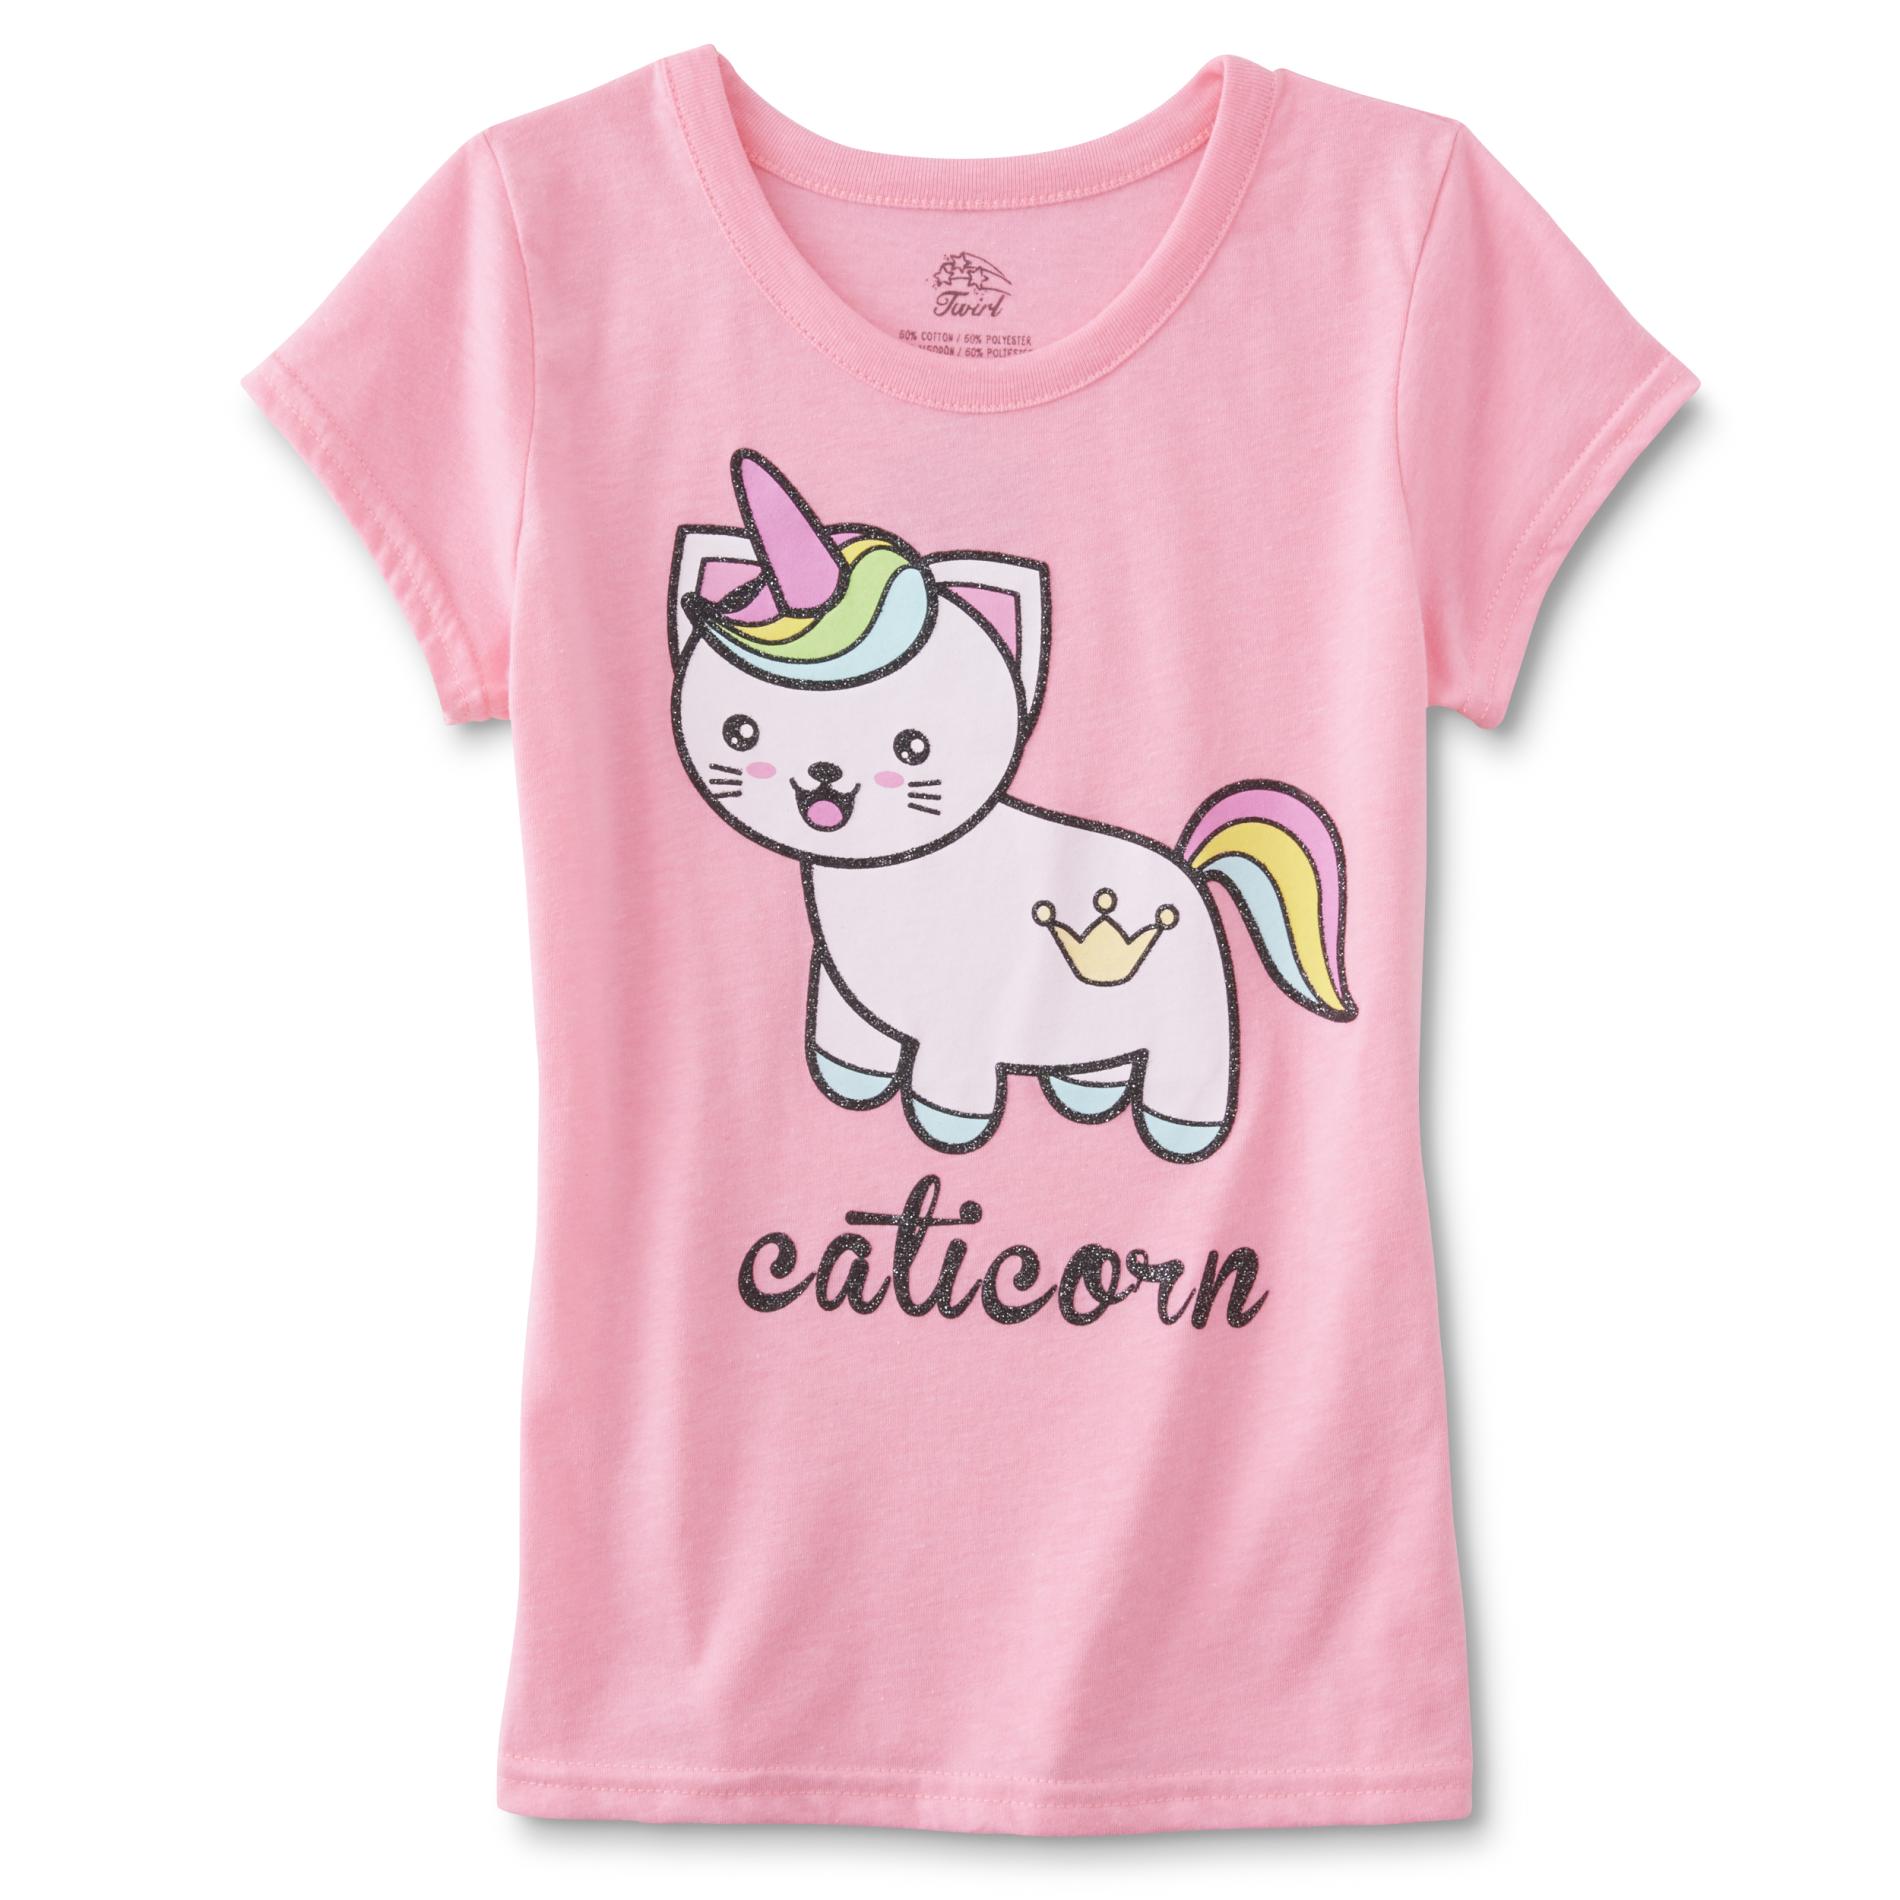 Girls' Graphic T-Shirt - Caticorn